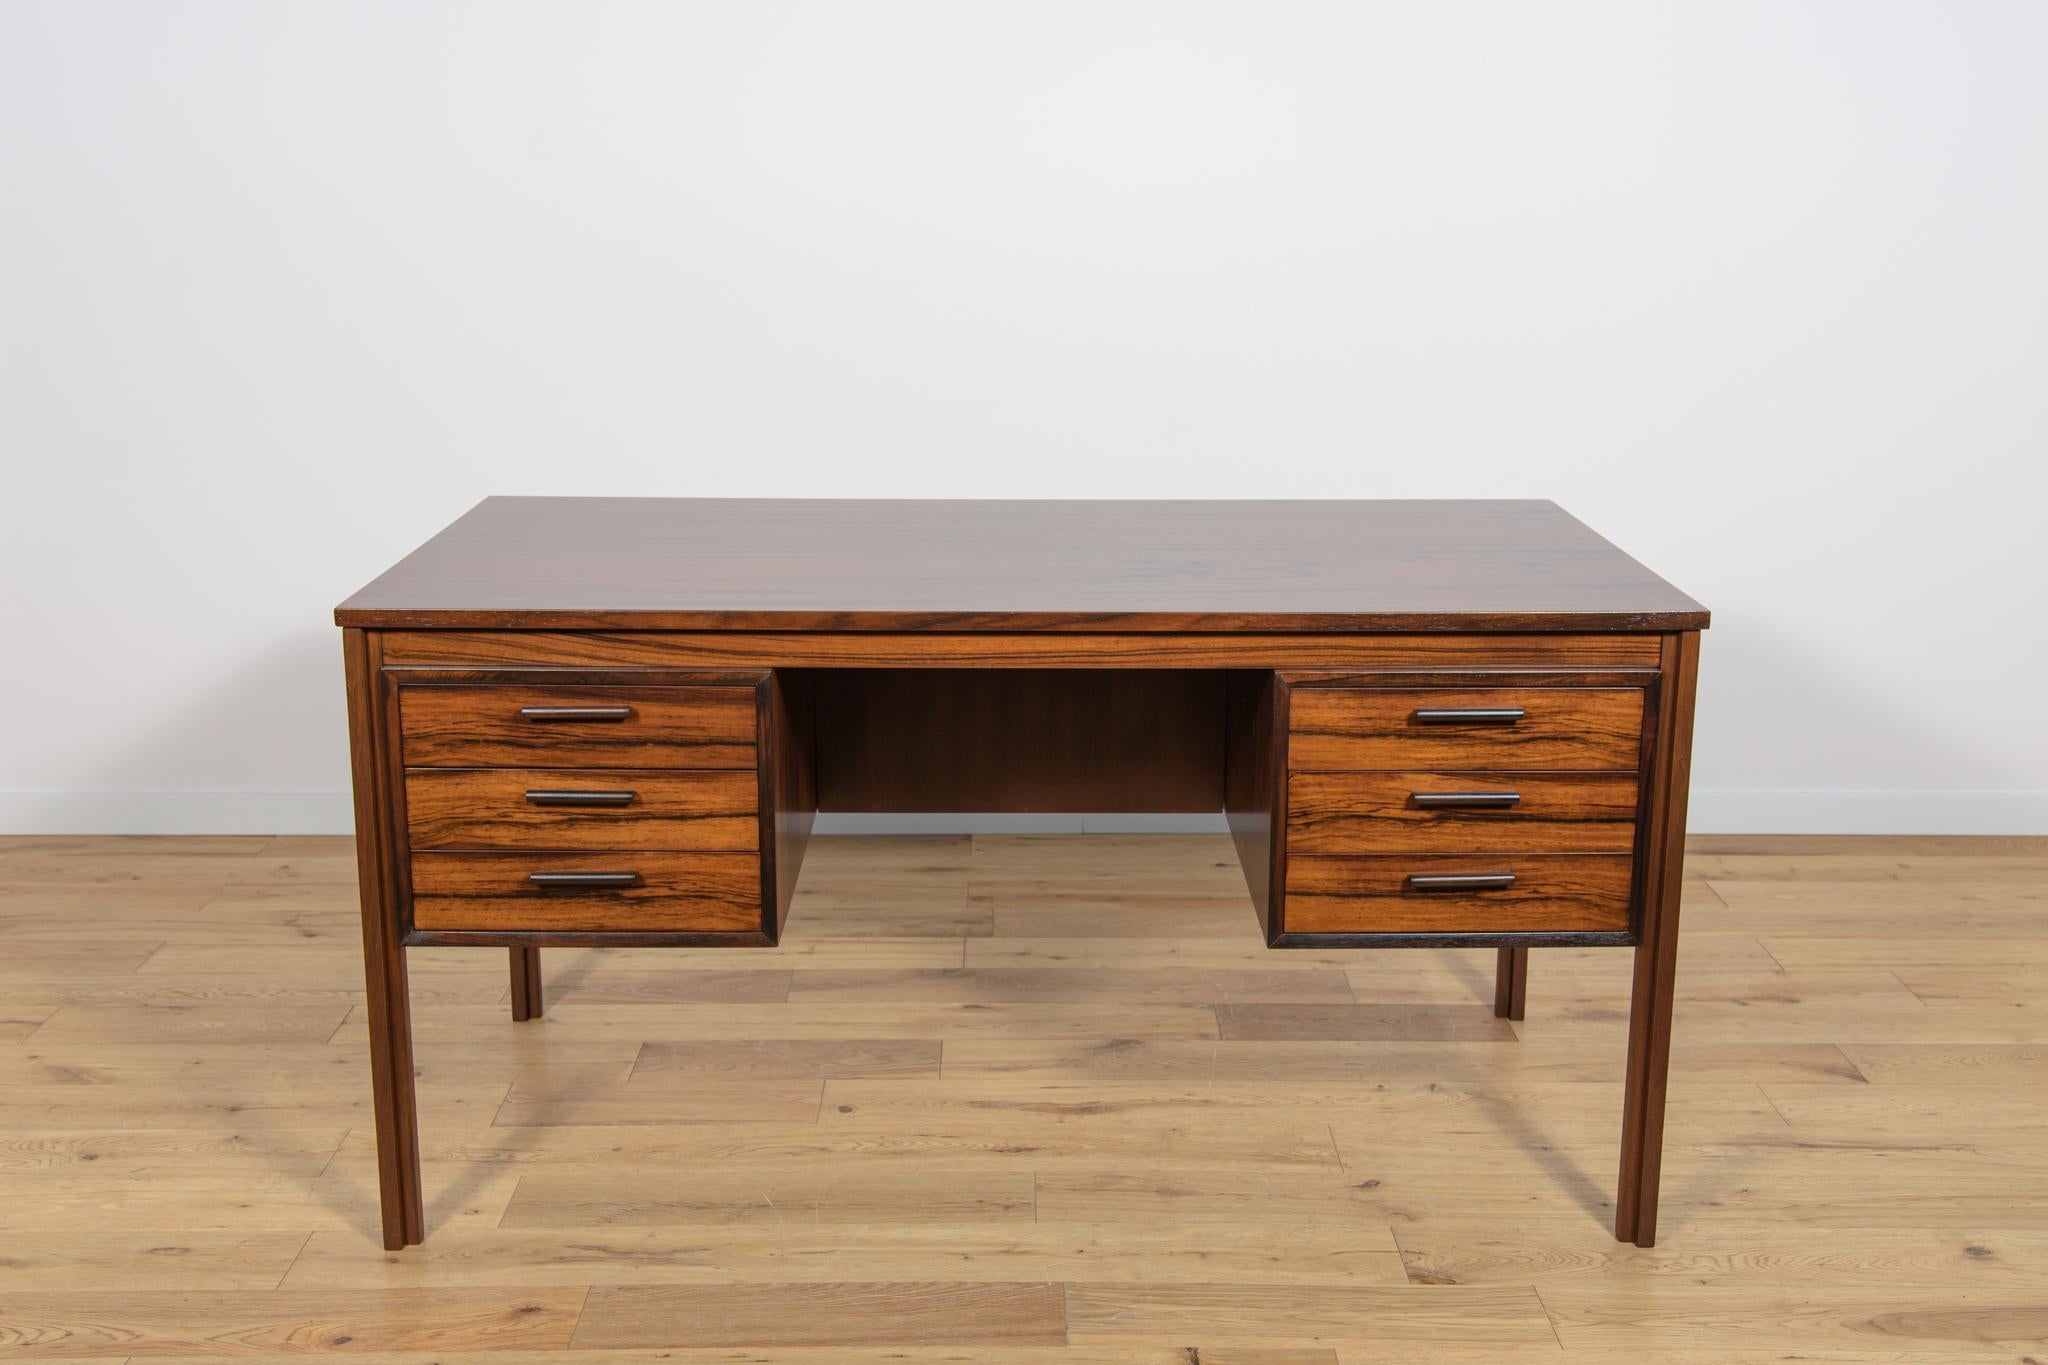 Dieser Schreibtisch wurde in den 1960er Jahren in Dänemark hergestellt. Der Schreibtisch ist aus Palisanderholz gefertigt und steht dank der fertigen Rückwand mit offenem Stauraum für Bücher freistehend. An der Vorderseite befinden sich zwei Module